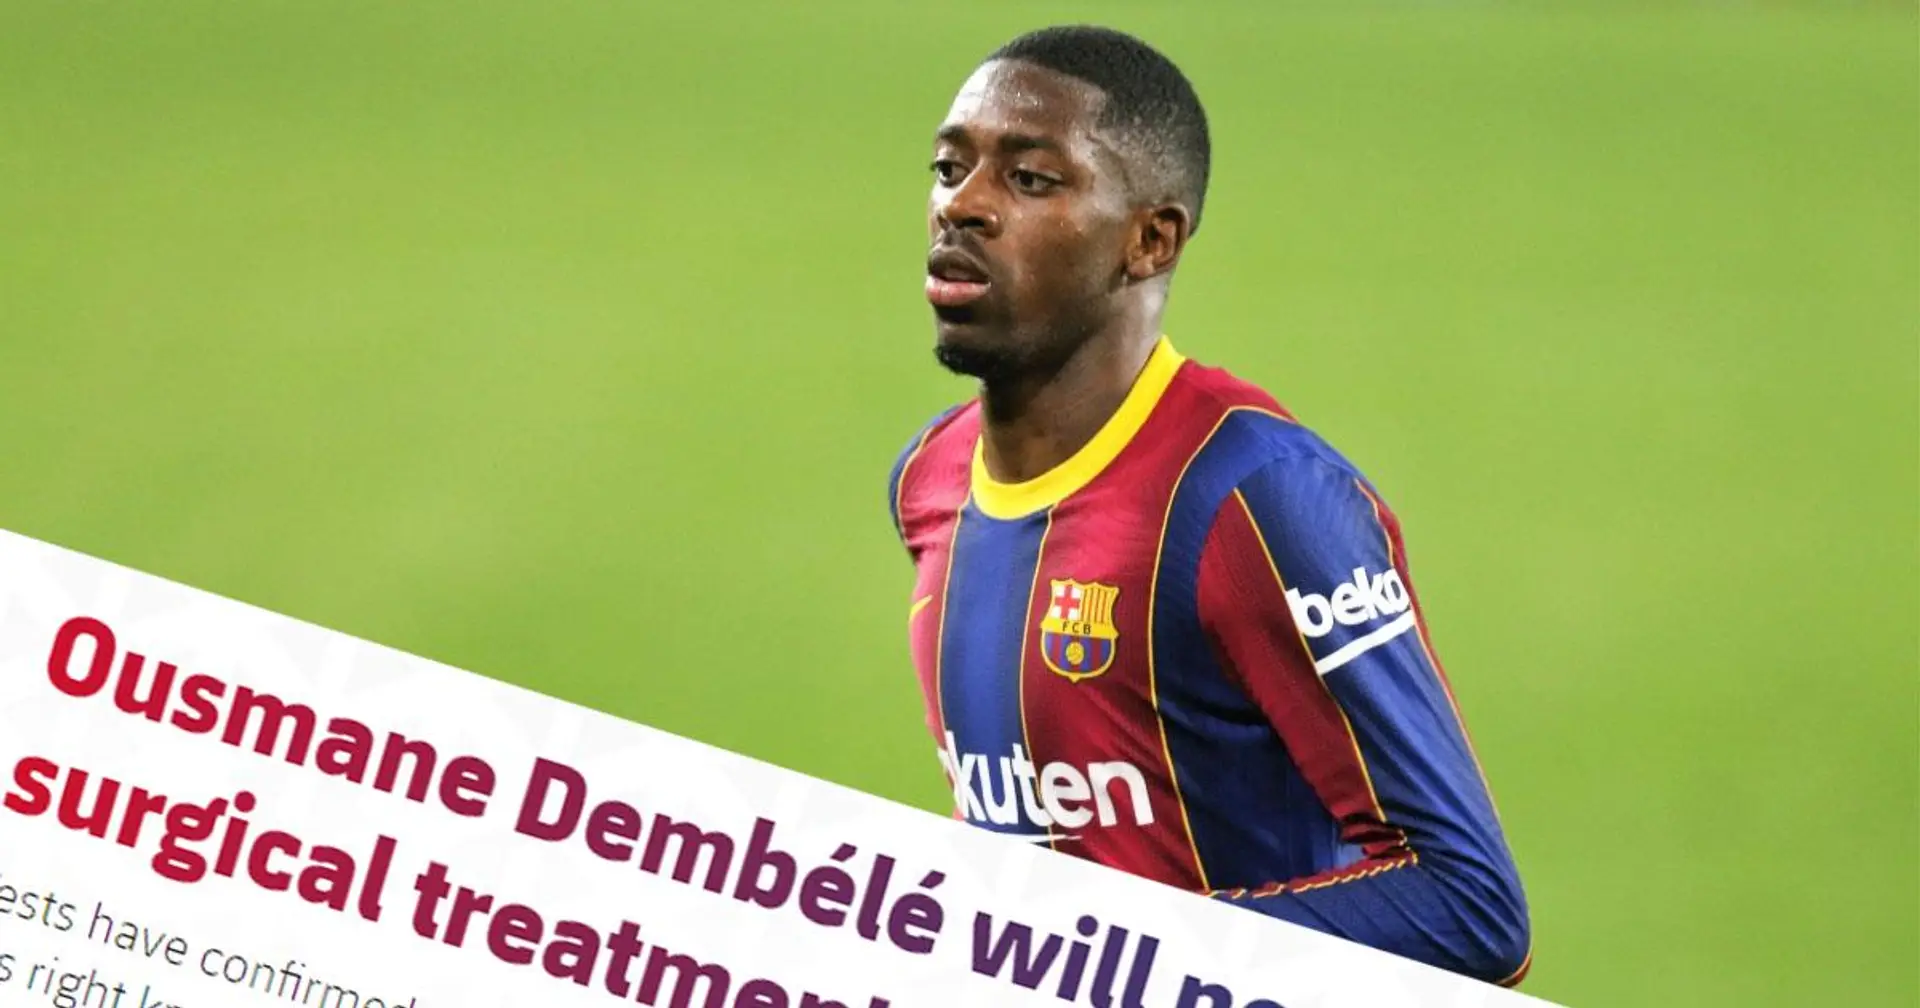 رسمياً : برشلونة يؤكد أن ديمبيلي سيخضع لعملية جراحية في الركبة